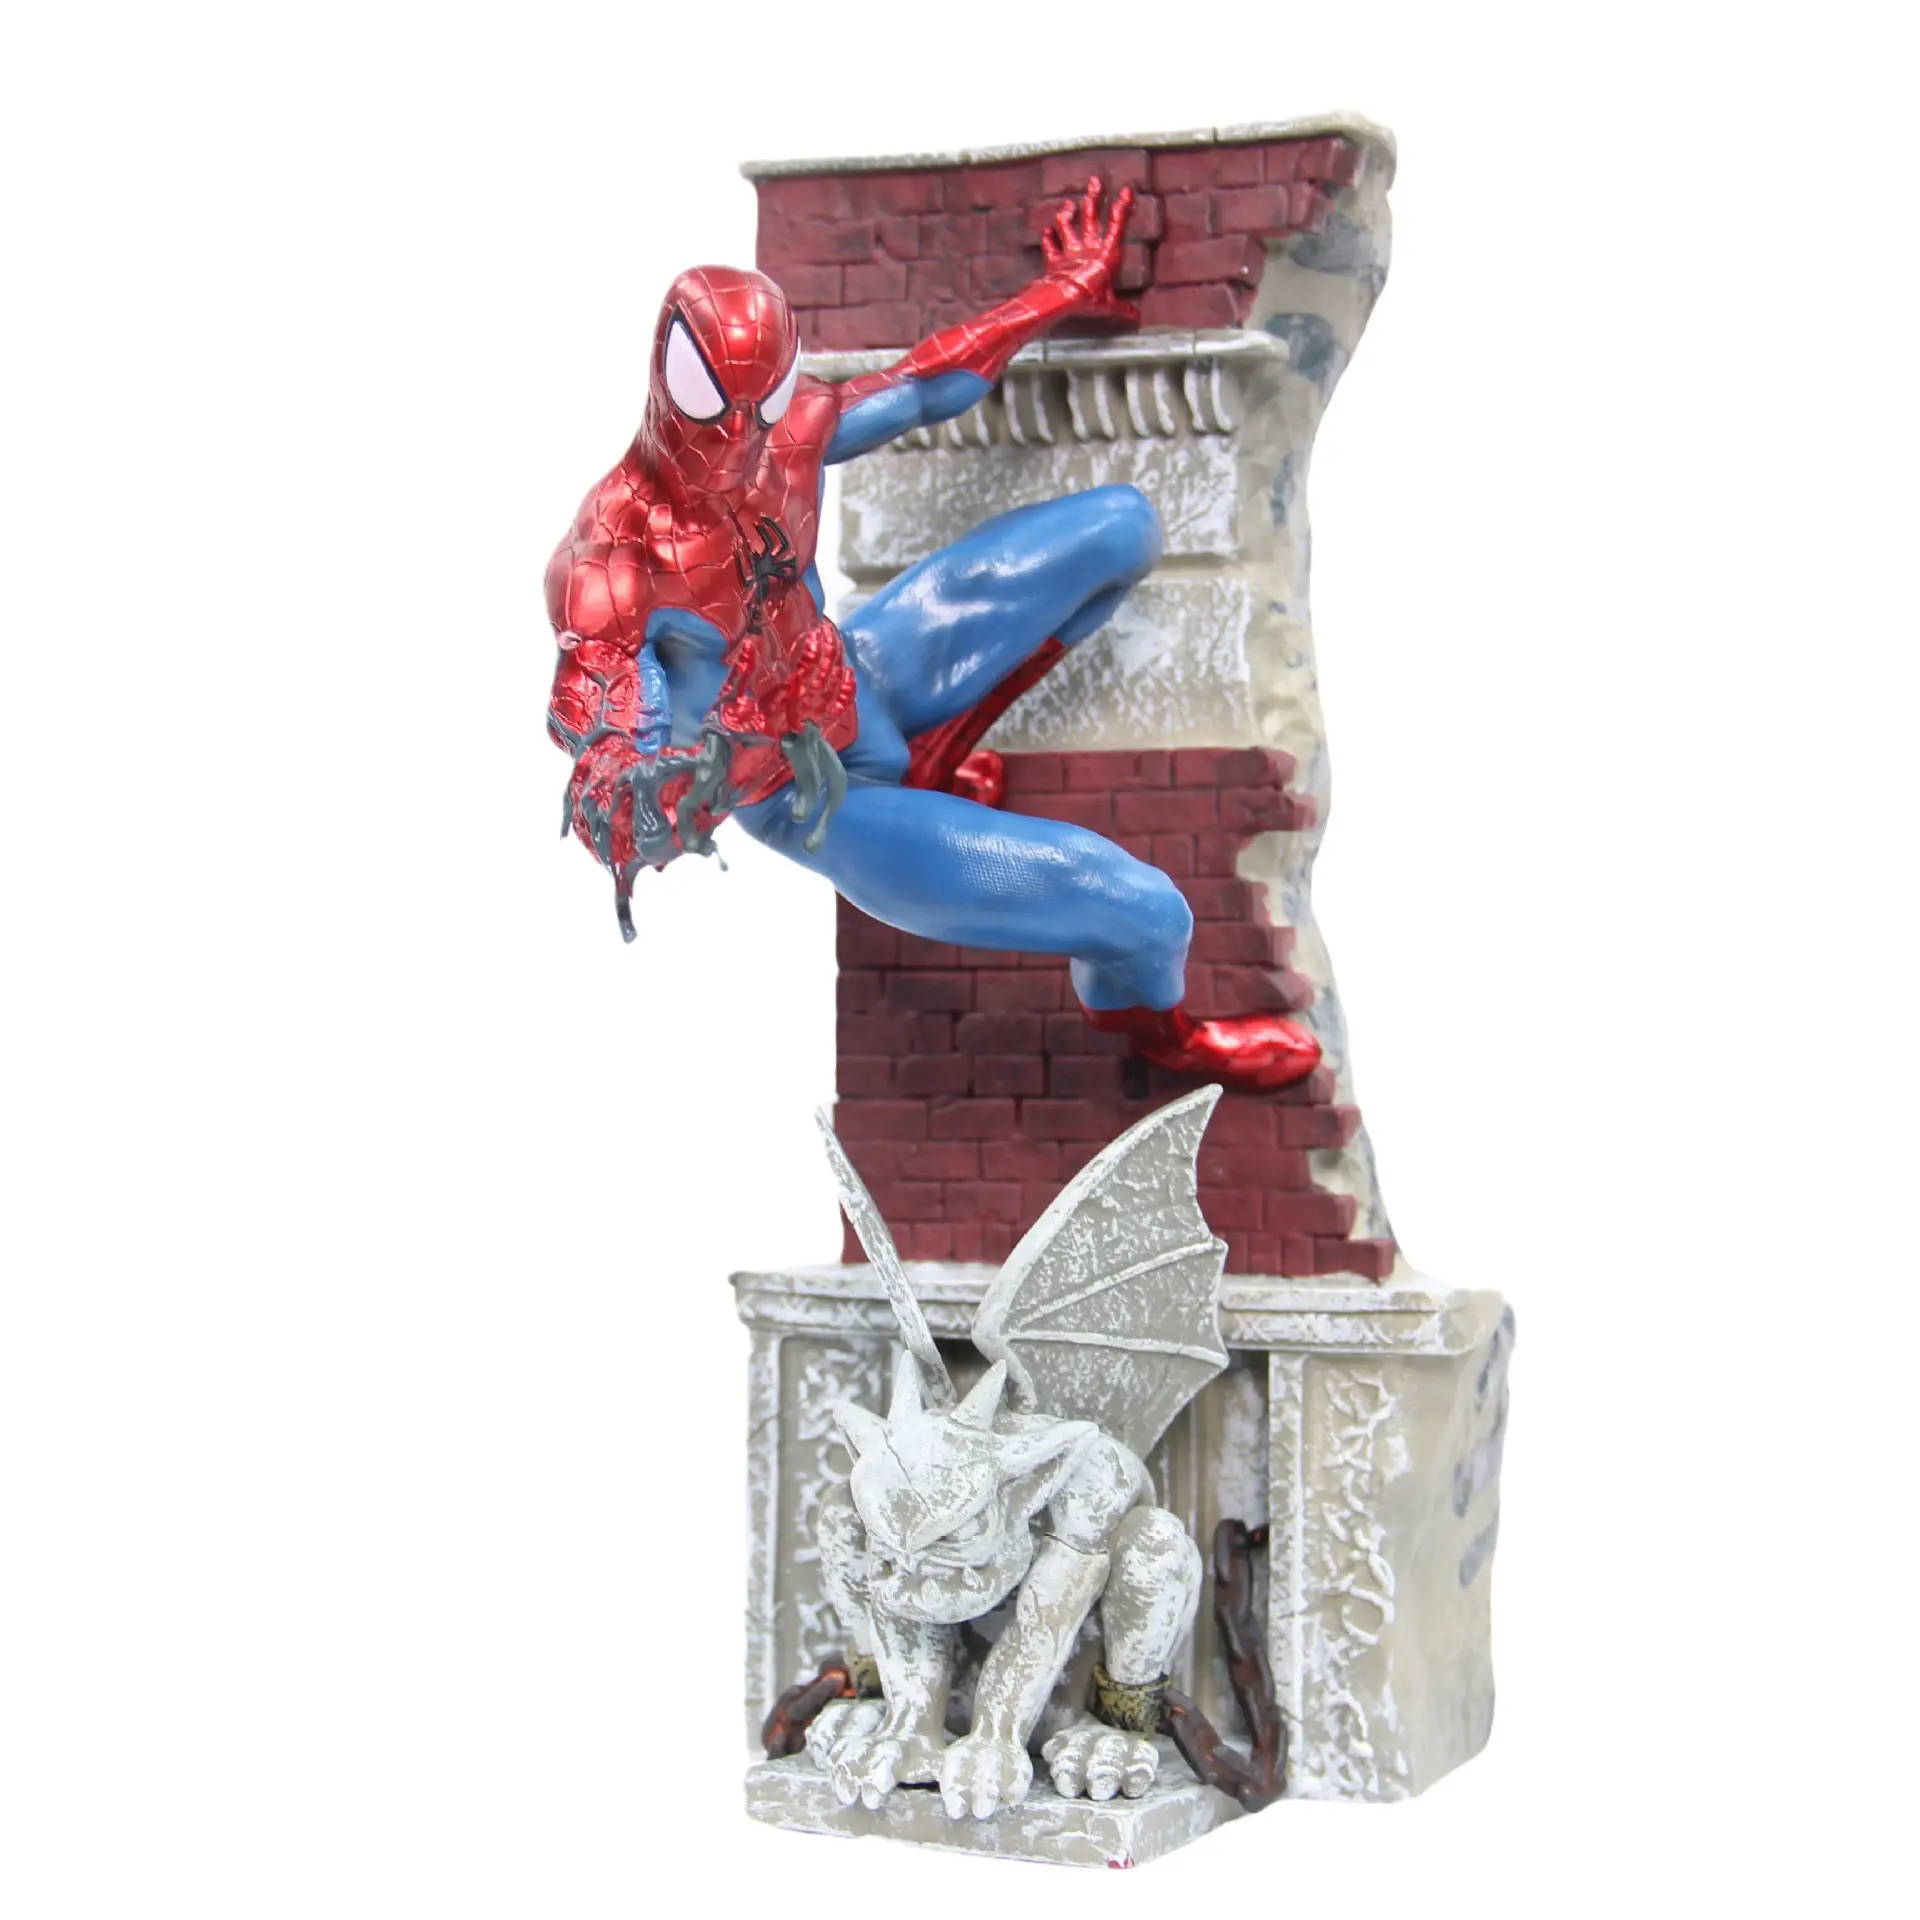 Yeni ürün harikaları kahramanlar seferler örümcek adam modeli heykeli süs aksiyon figürleri hediye için